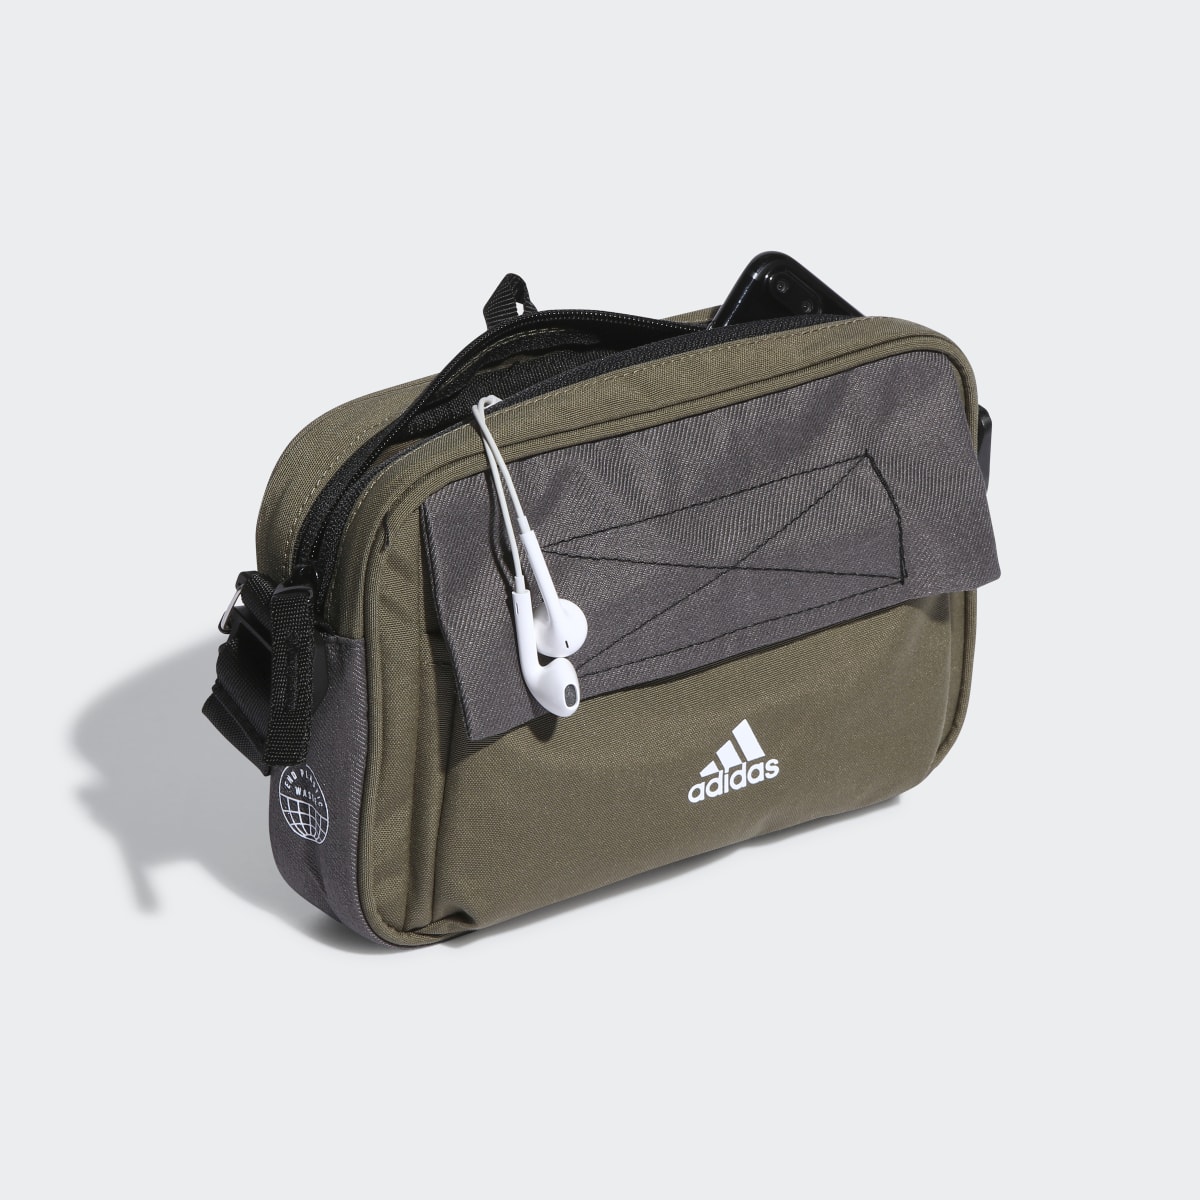 Adidas City Xplorer Organizer Bag. 5